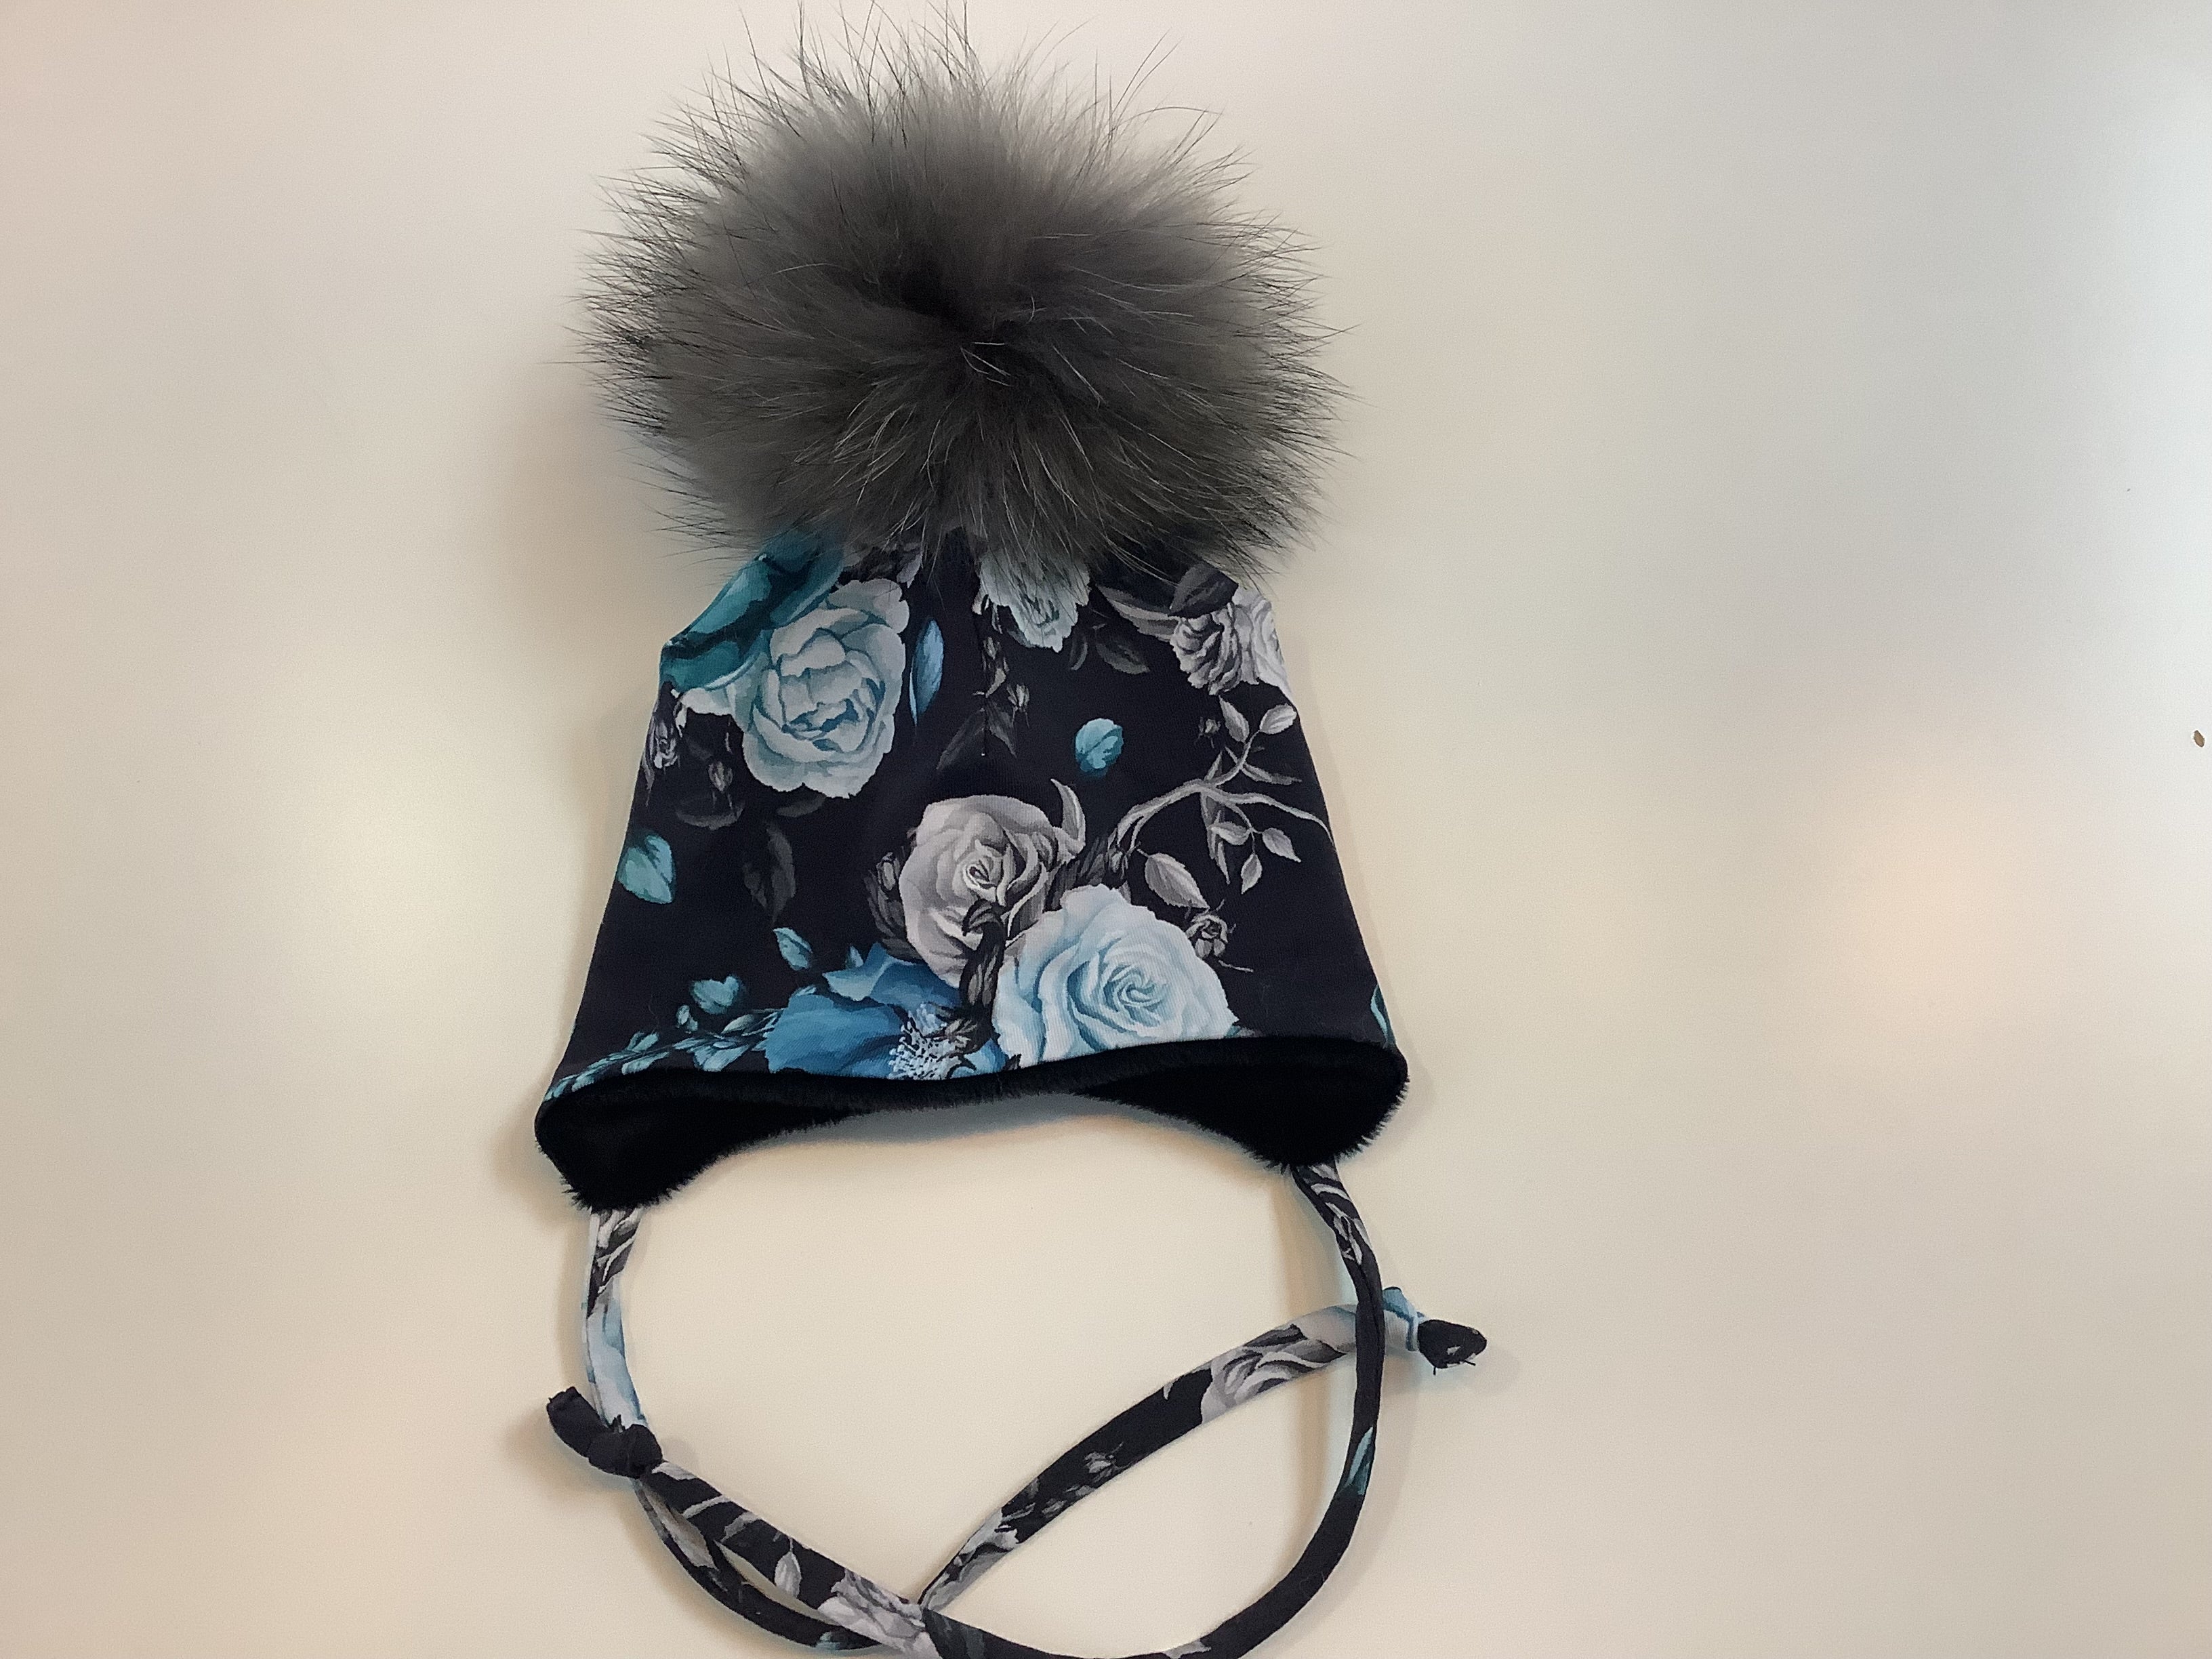 MEF créations - Tuque doublée pour l’hiver avec attache - fleuris bleu et noir